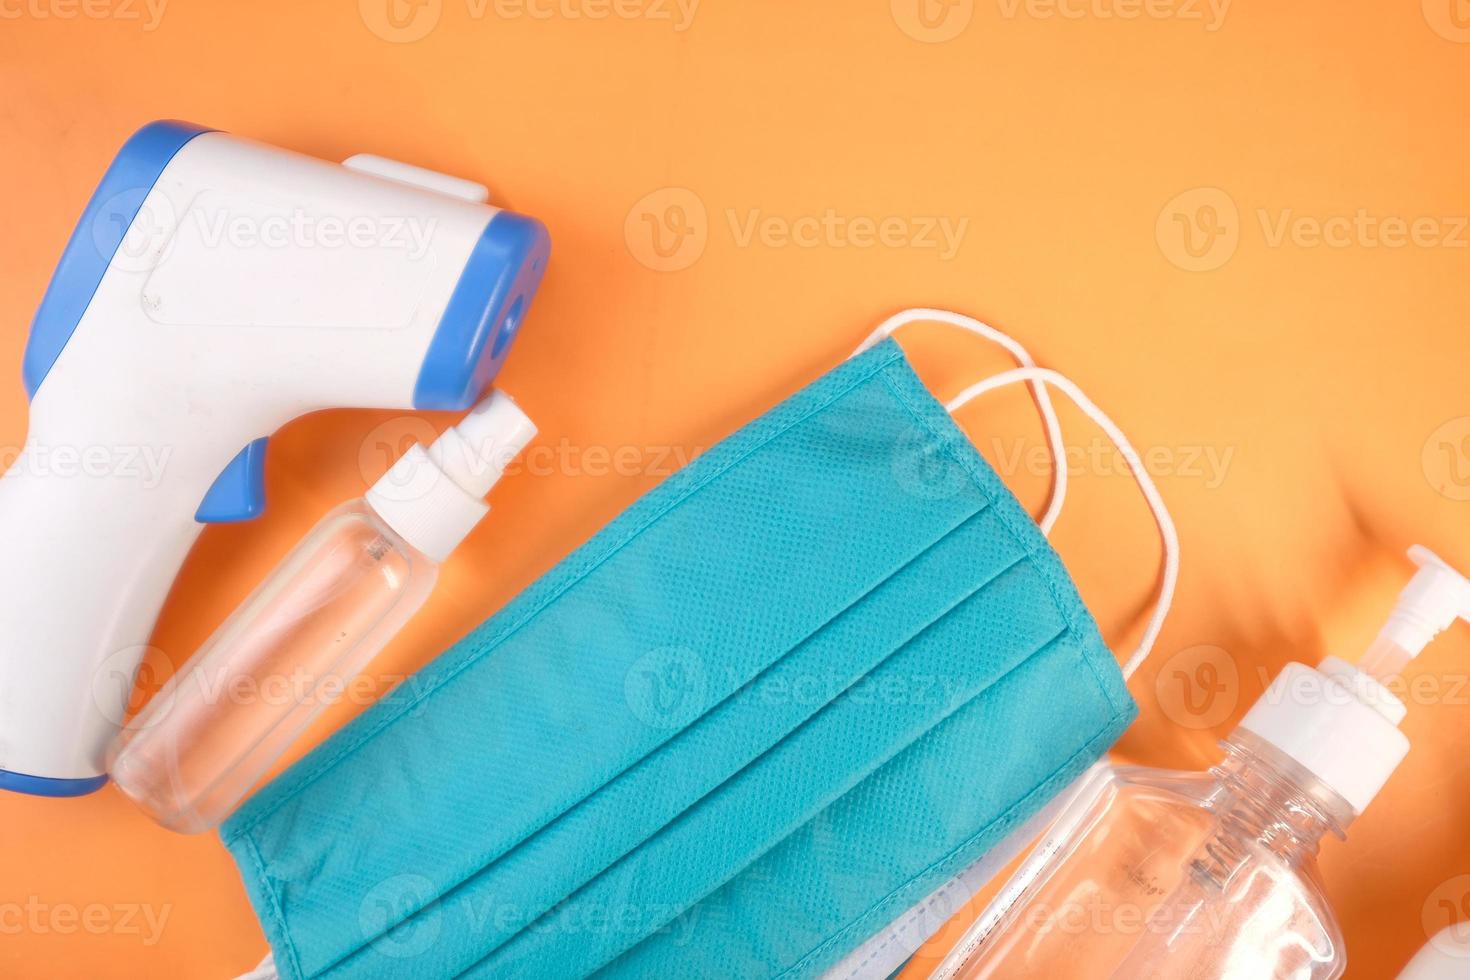 maschere chirurgiche, termometro e disinfettante per le mani su sfondo arancione foto